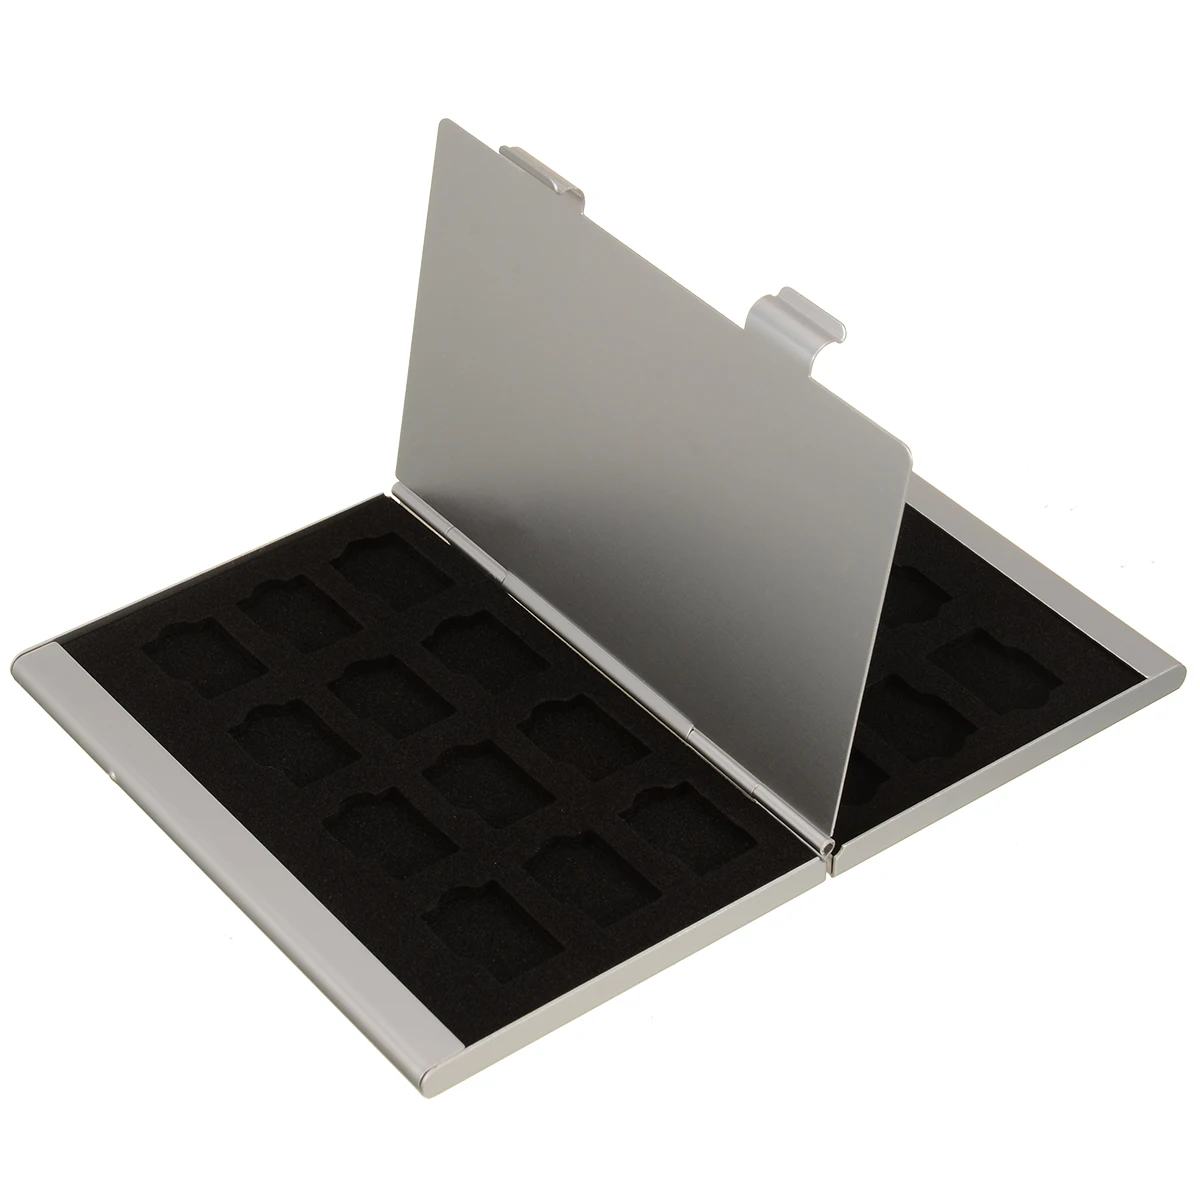 24 В 1 Портативная Алюминиевая коробка для хранения карт TF для карт памяти, чехлы для хранения, держатель, защита, универсальные удобные инструменты для переноски